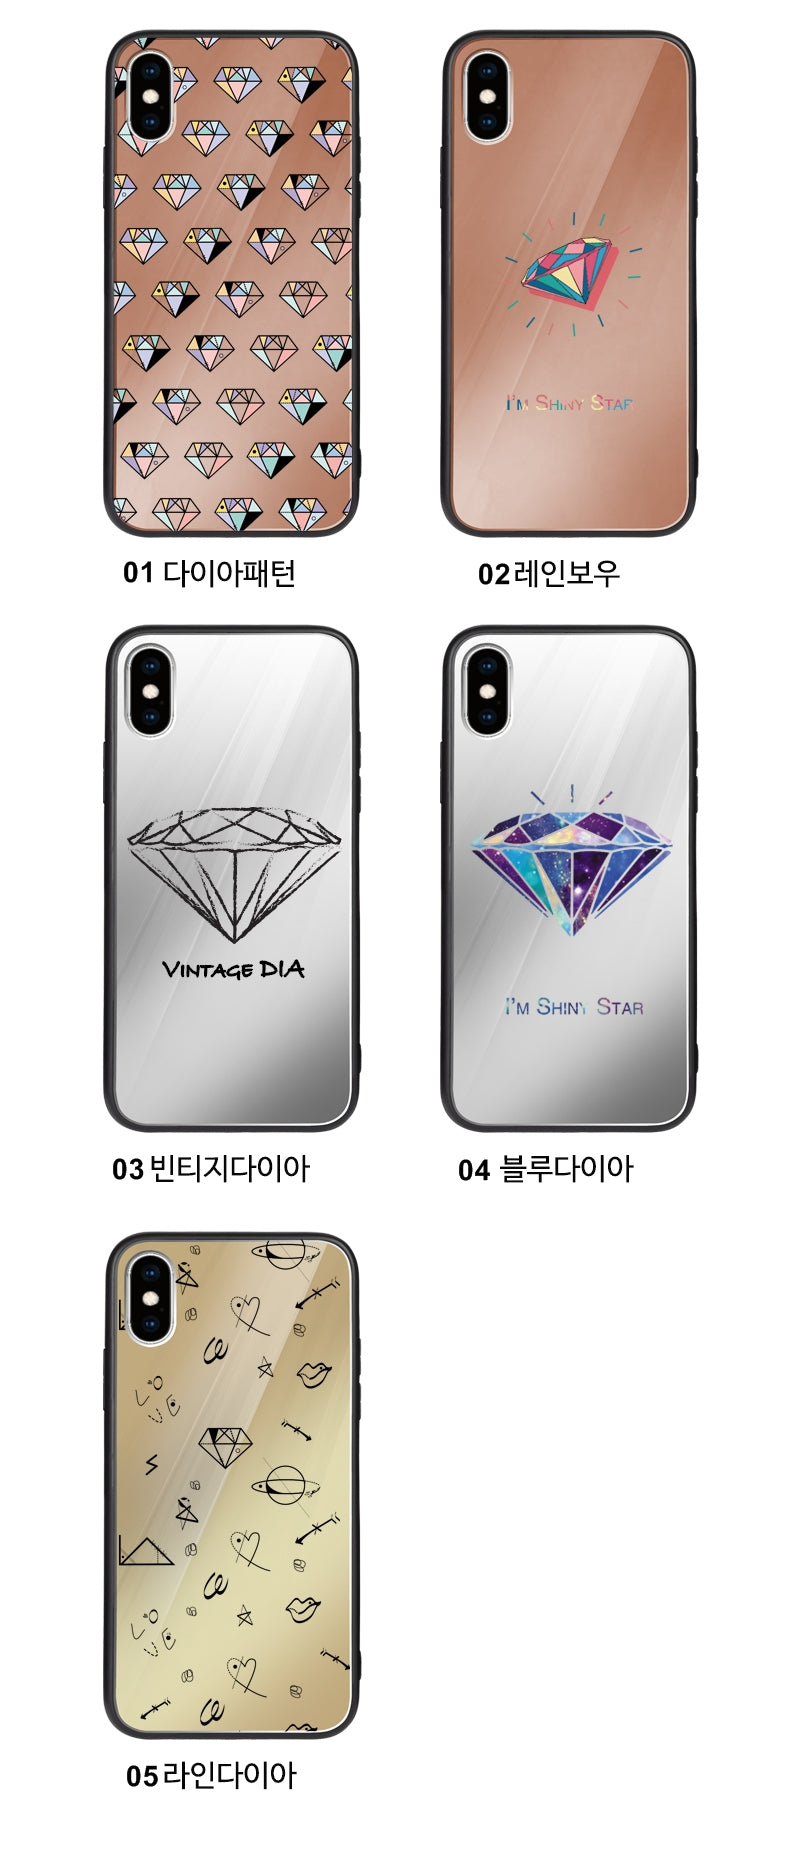 韓國直送 | M25 DIAMOND PATTERN 鏡面手機殼 iPhone / Samsung Galaxy 系列